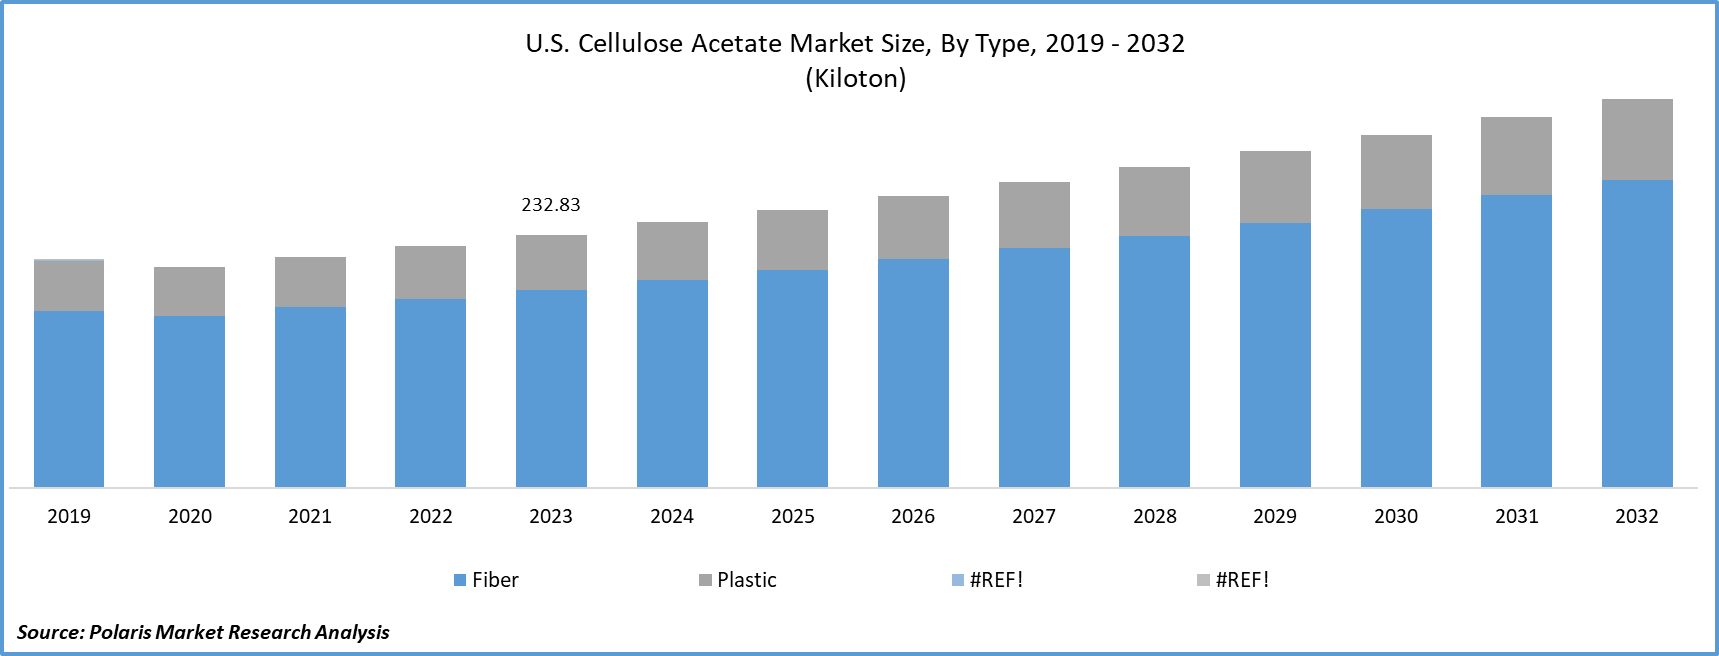 Cellulose Acetate Market Size